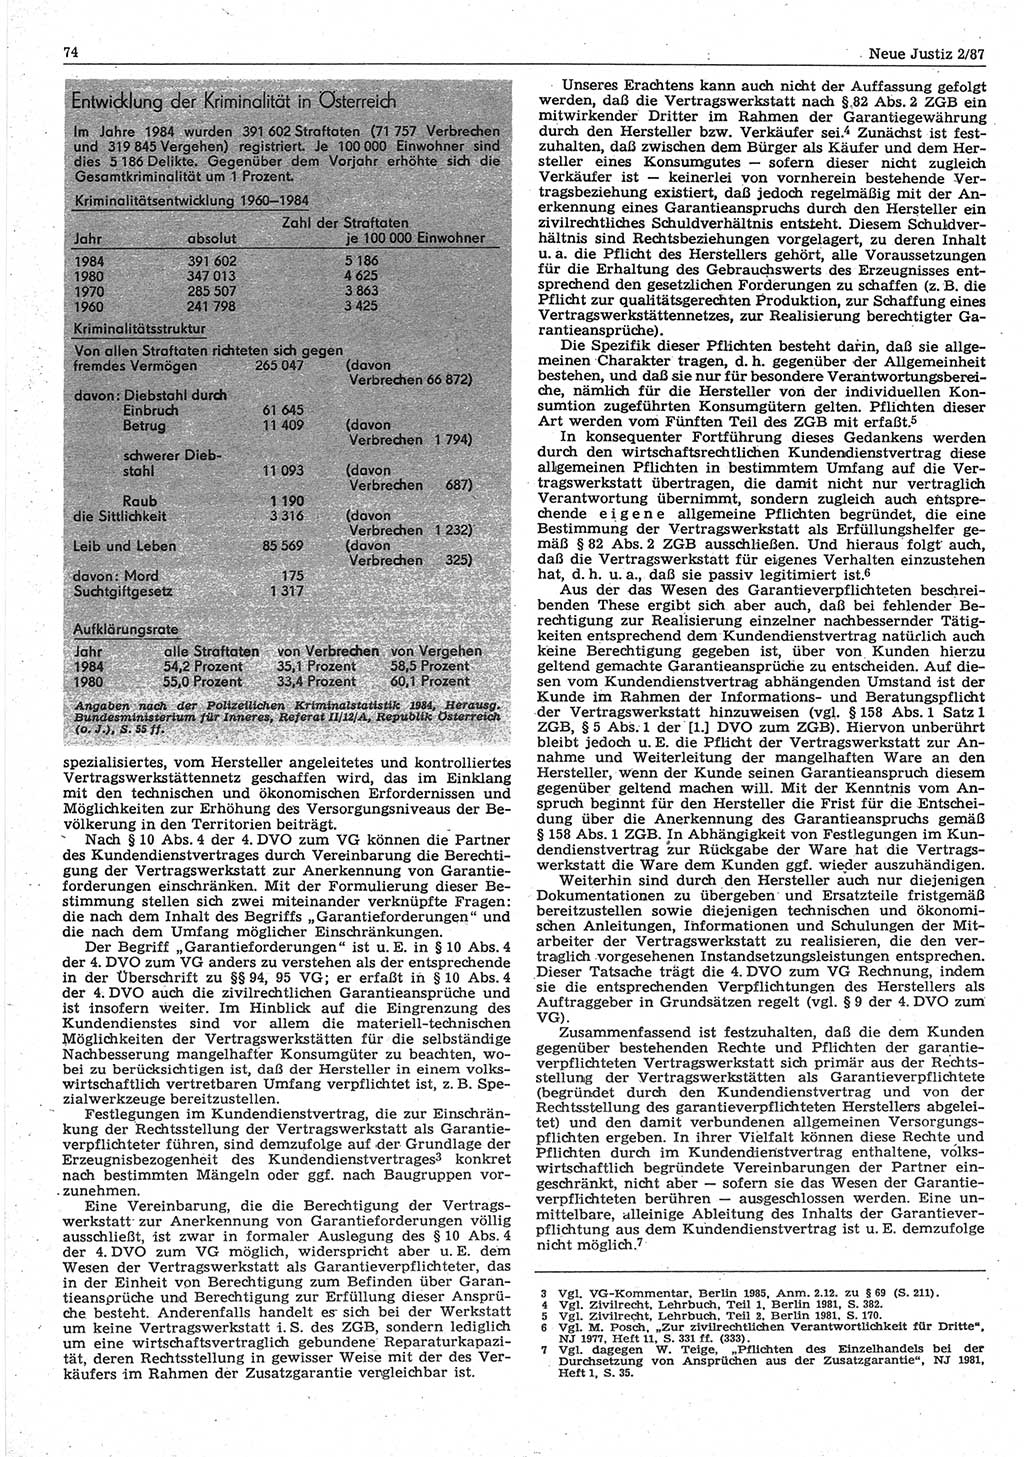 Neue Justiz (NJ), Zeitschrift für sozialistisches Recht und Gesetzlichkeit [Deutsche Demokratische Republik (DDR)], 41. Jahrgang 1987, Seite 74 (NJ DDR 1987, S. 74)